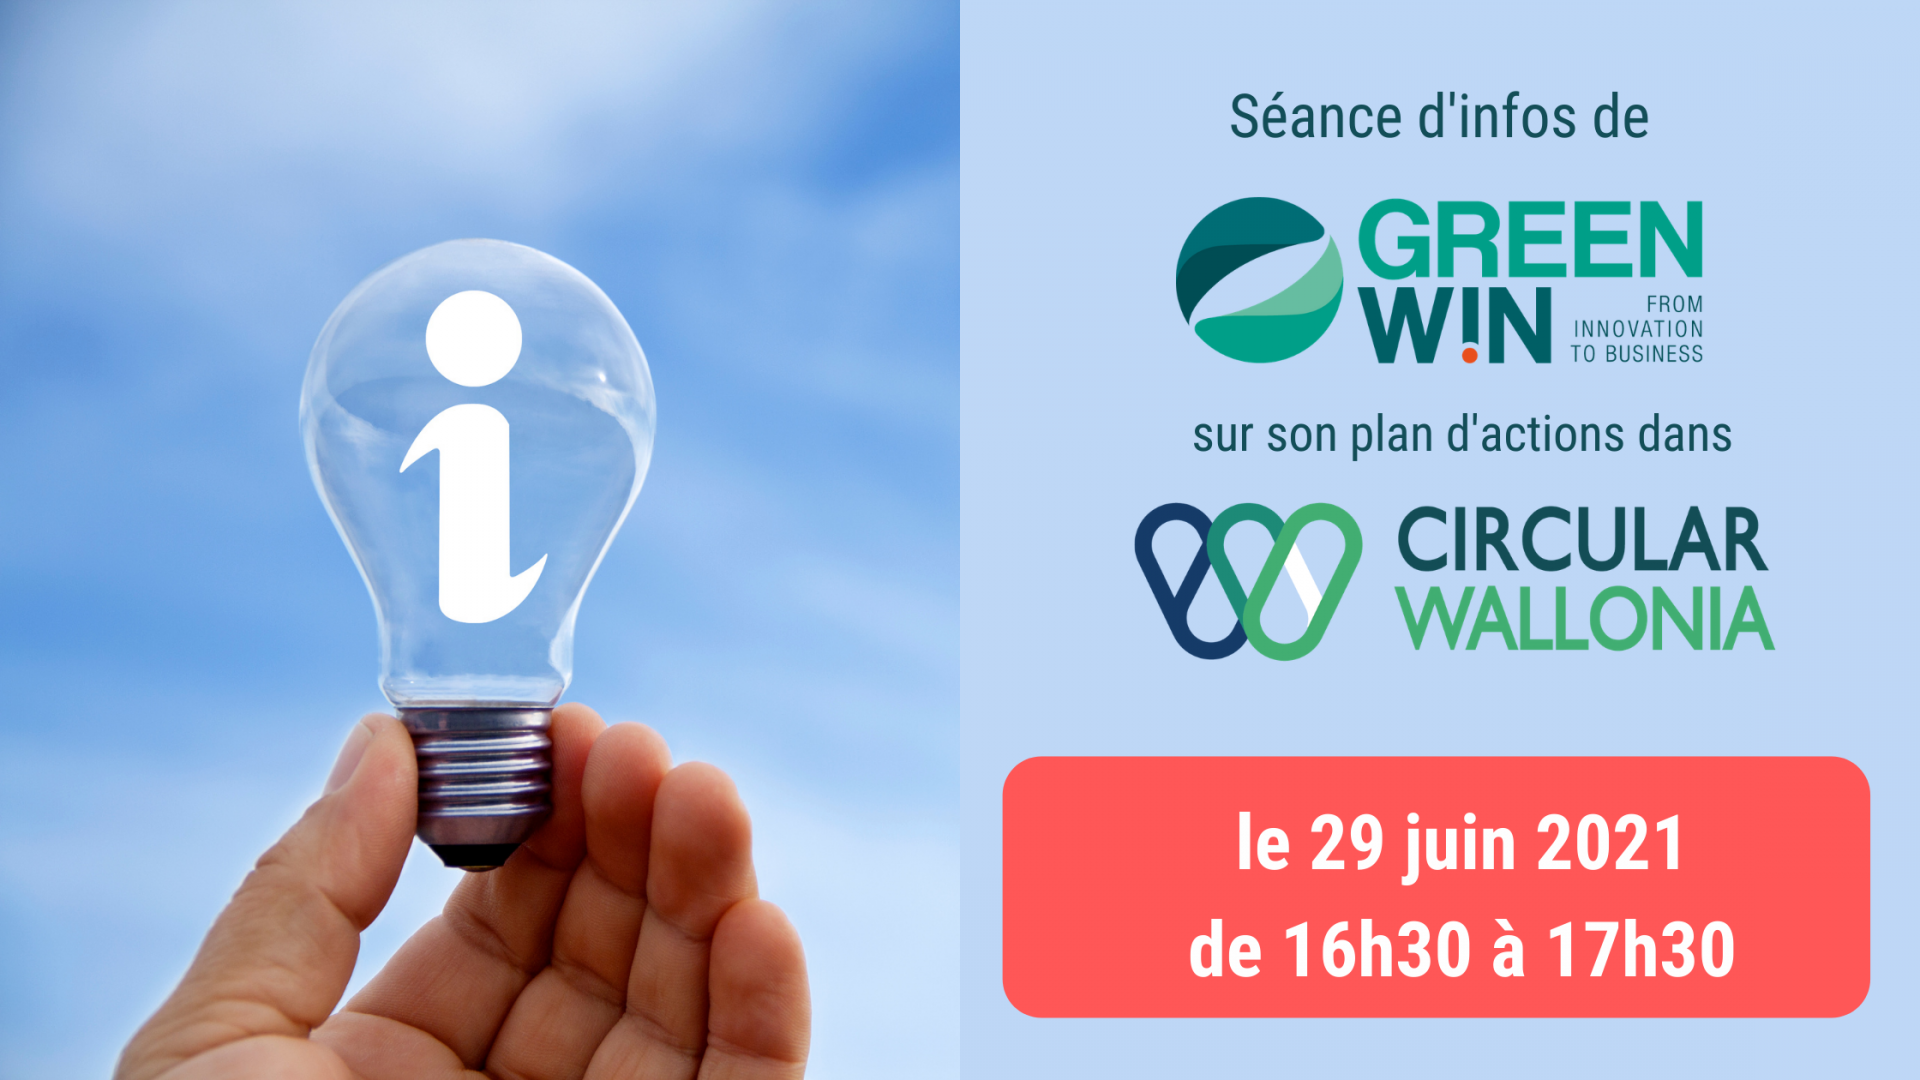 PARTICIPEZ à la SÉANCE D’INFO sur le plan d’actions de GreenWin dans Circular Wallonia, ce 29.06.21 de 16h30 à 17h30 !